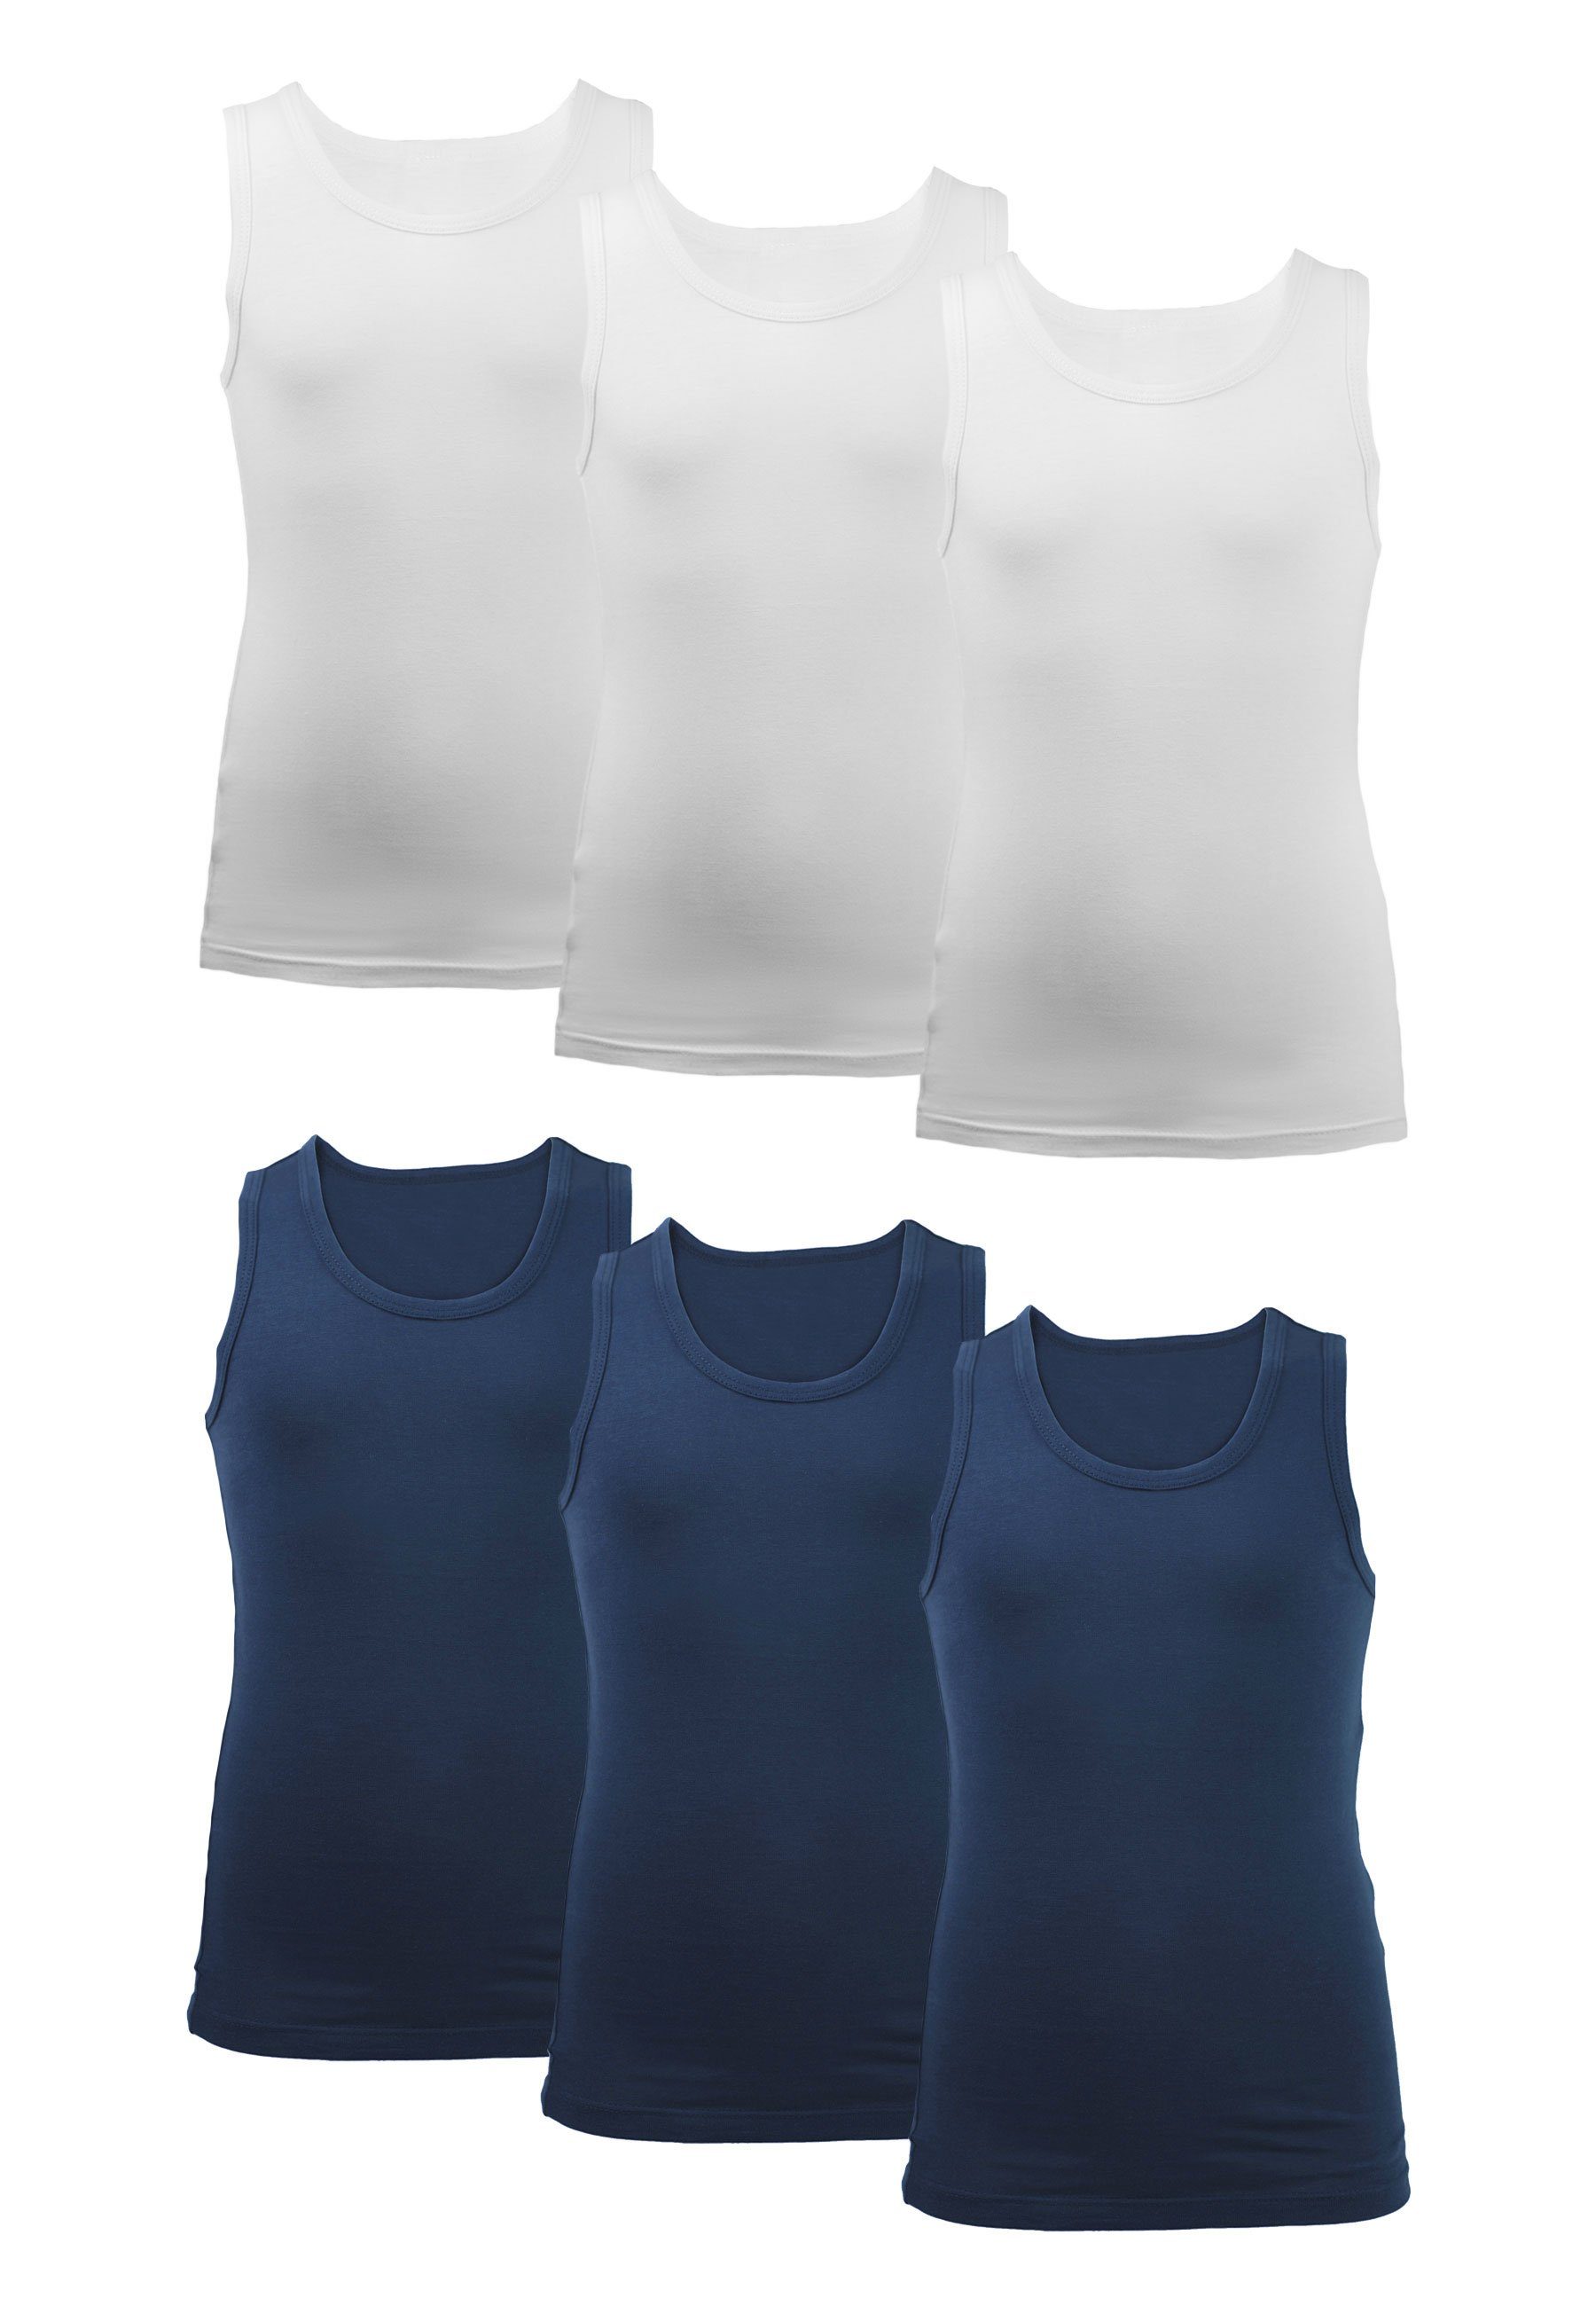 CARBURANT Unterhemd 6er-Pack für aus reiner Jungen weiß/blau Baumwolle